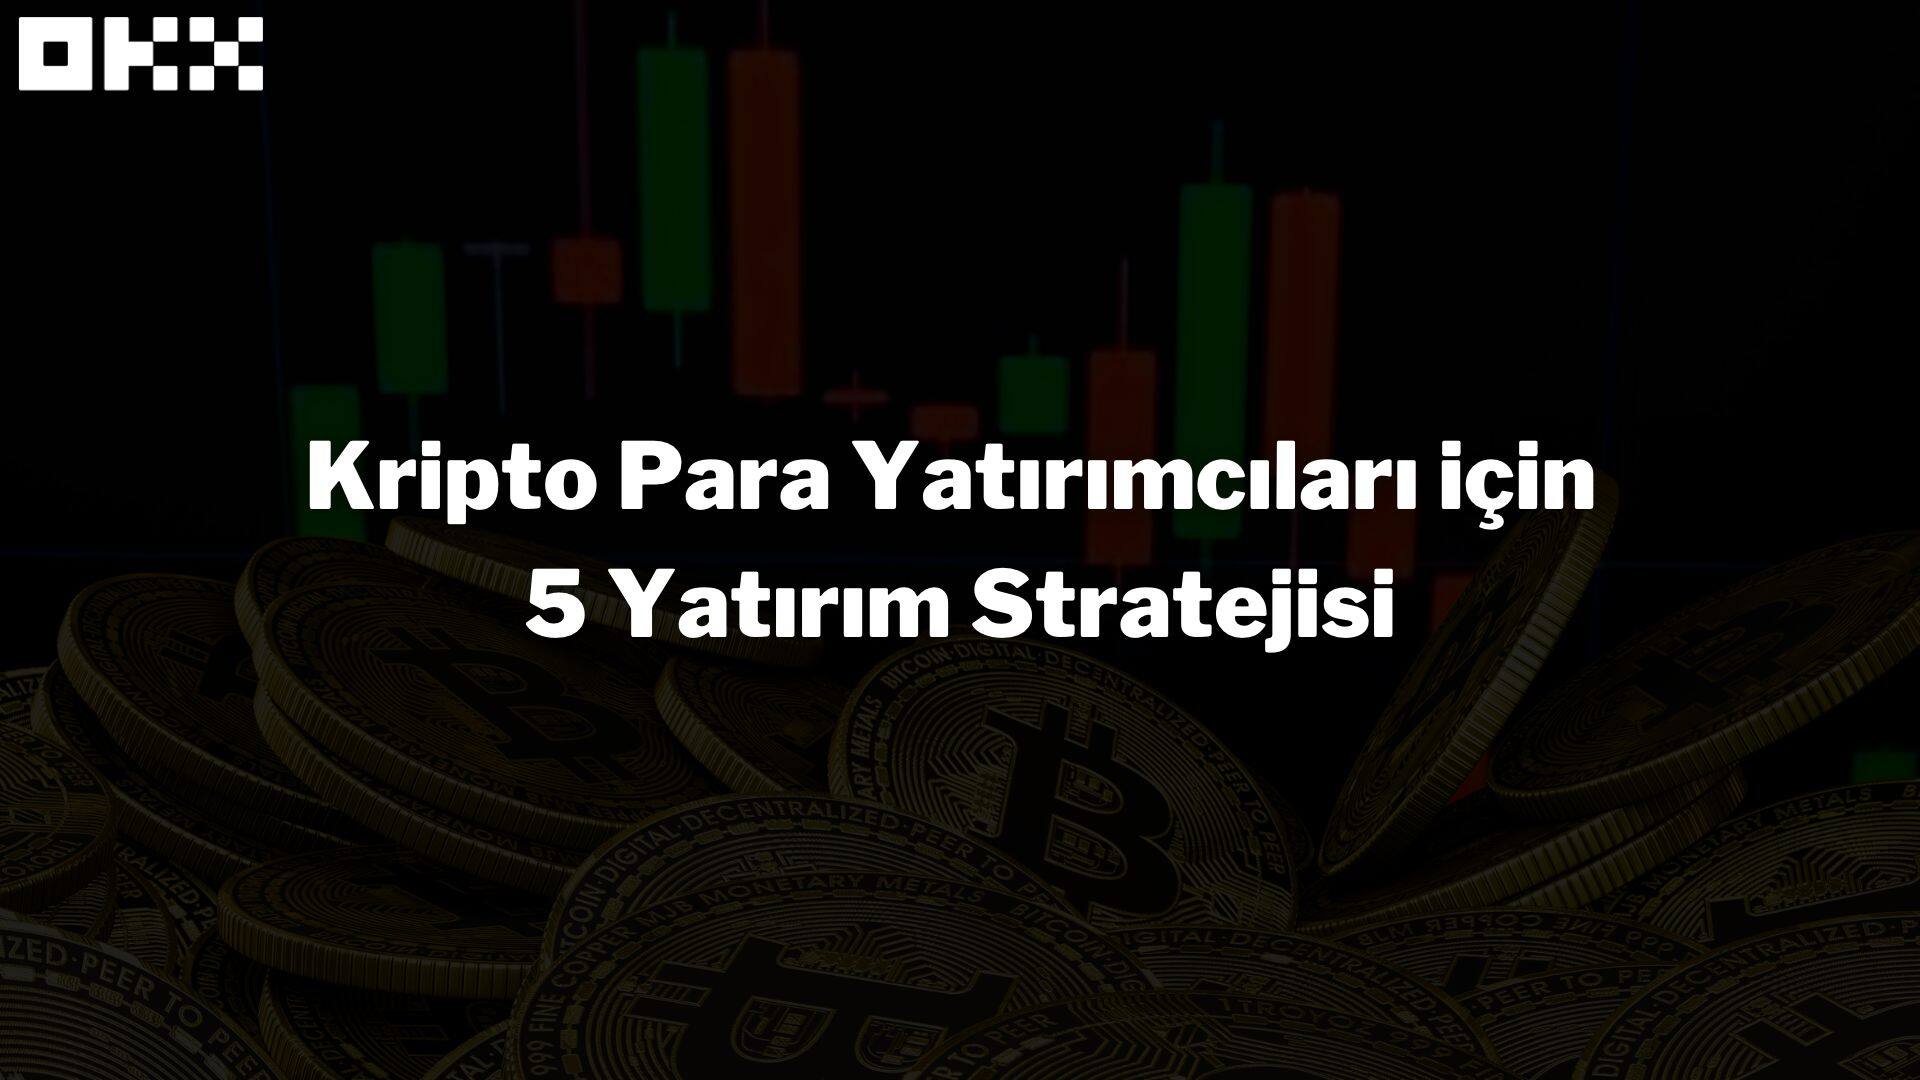 Kripto Para Yatırımcıları için 5 Yatırım Stratejisi